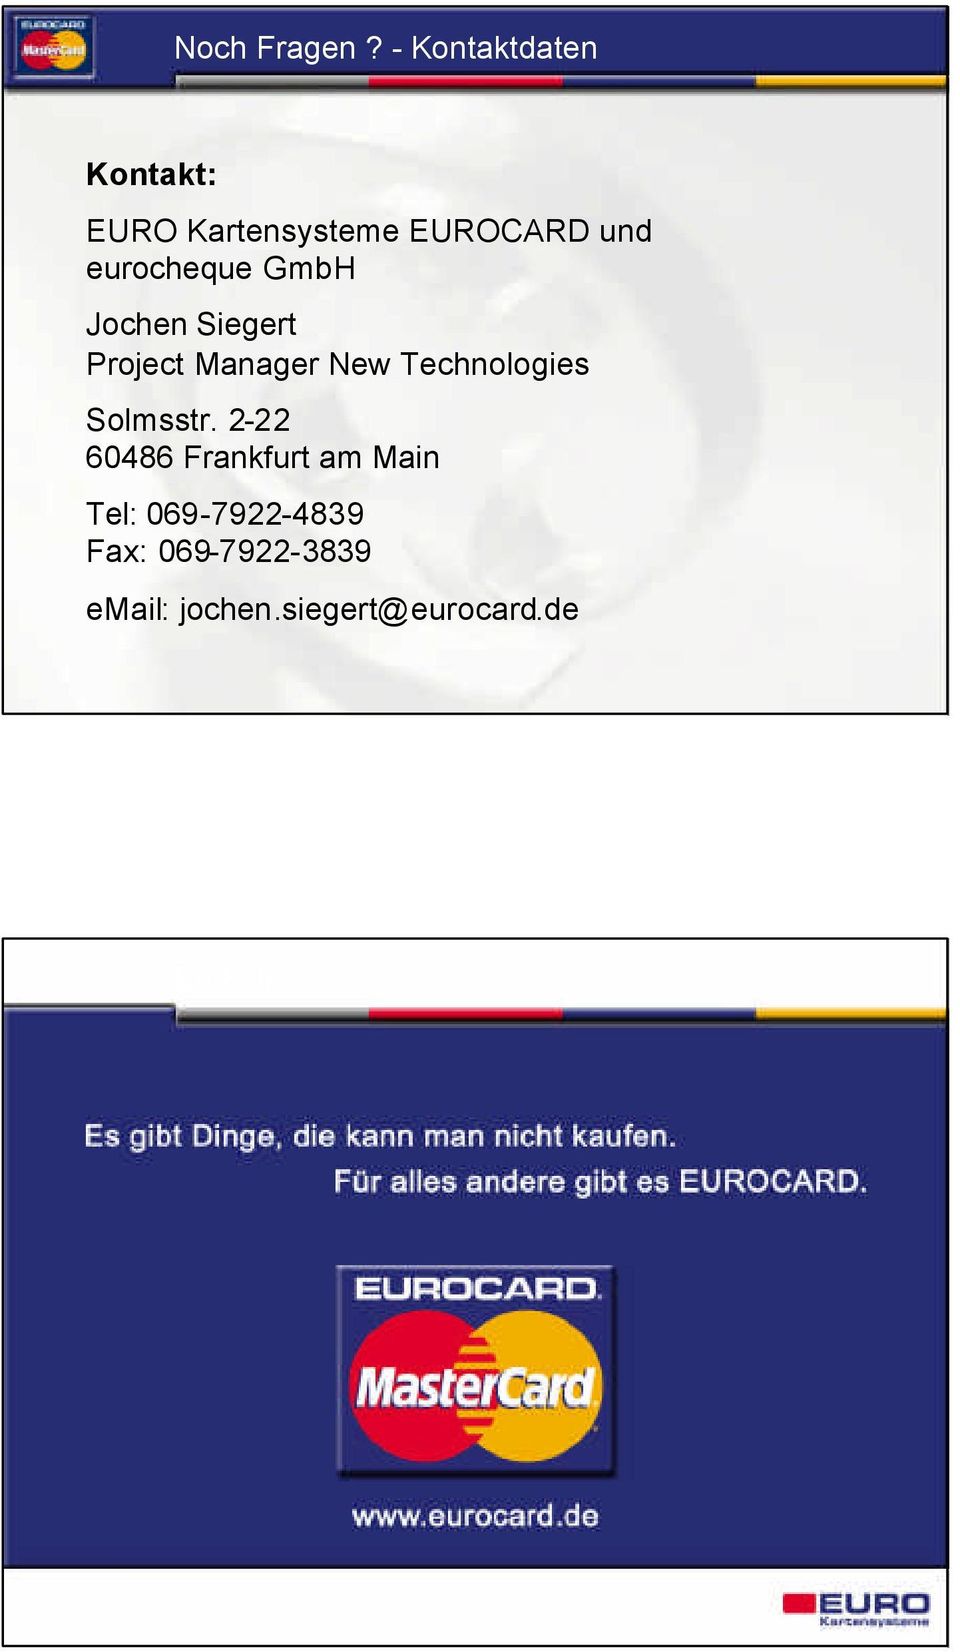 eurocheque GmbH Jochen Siegert Project Manager New